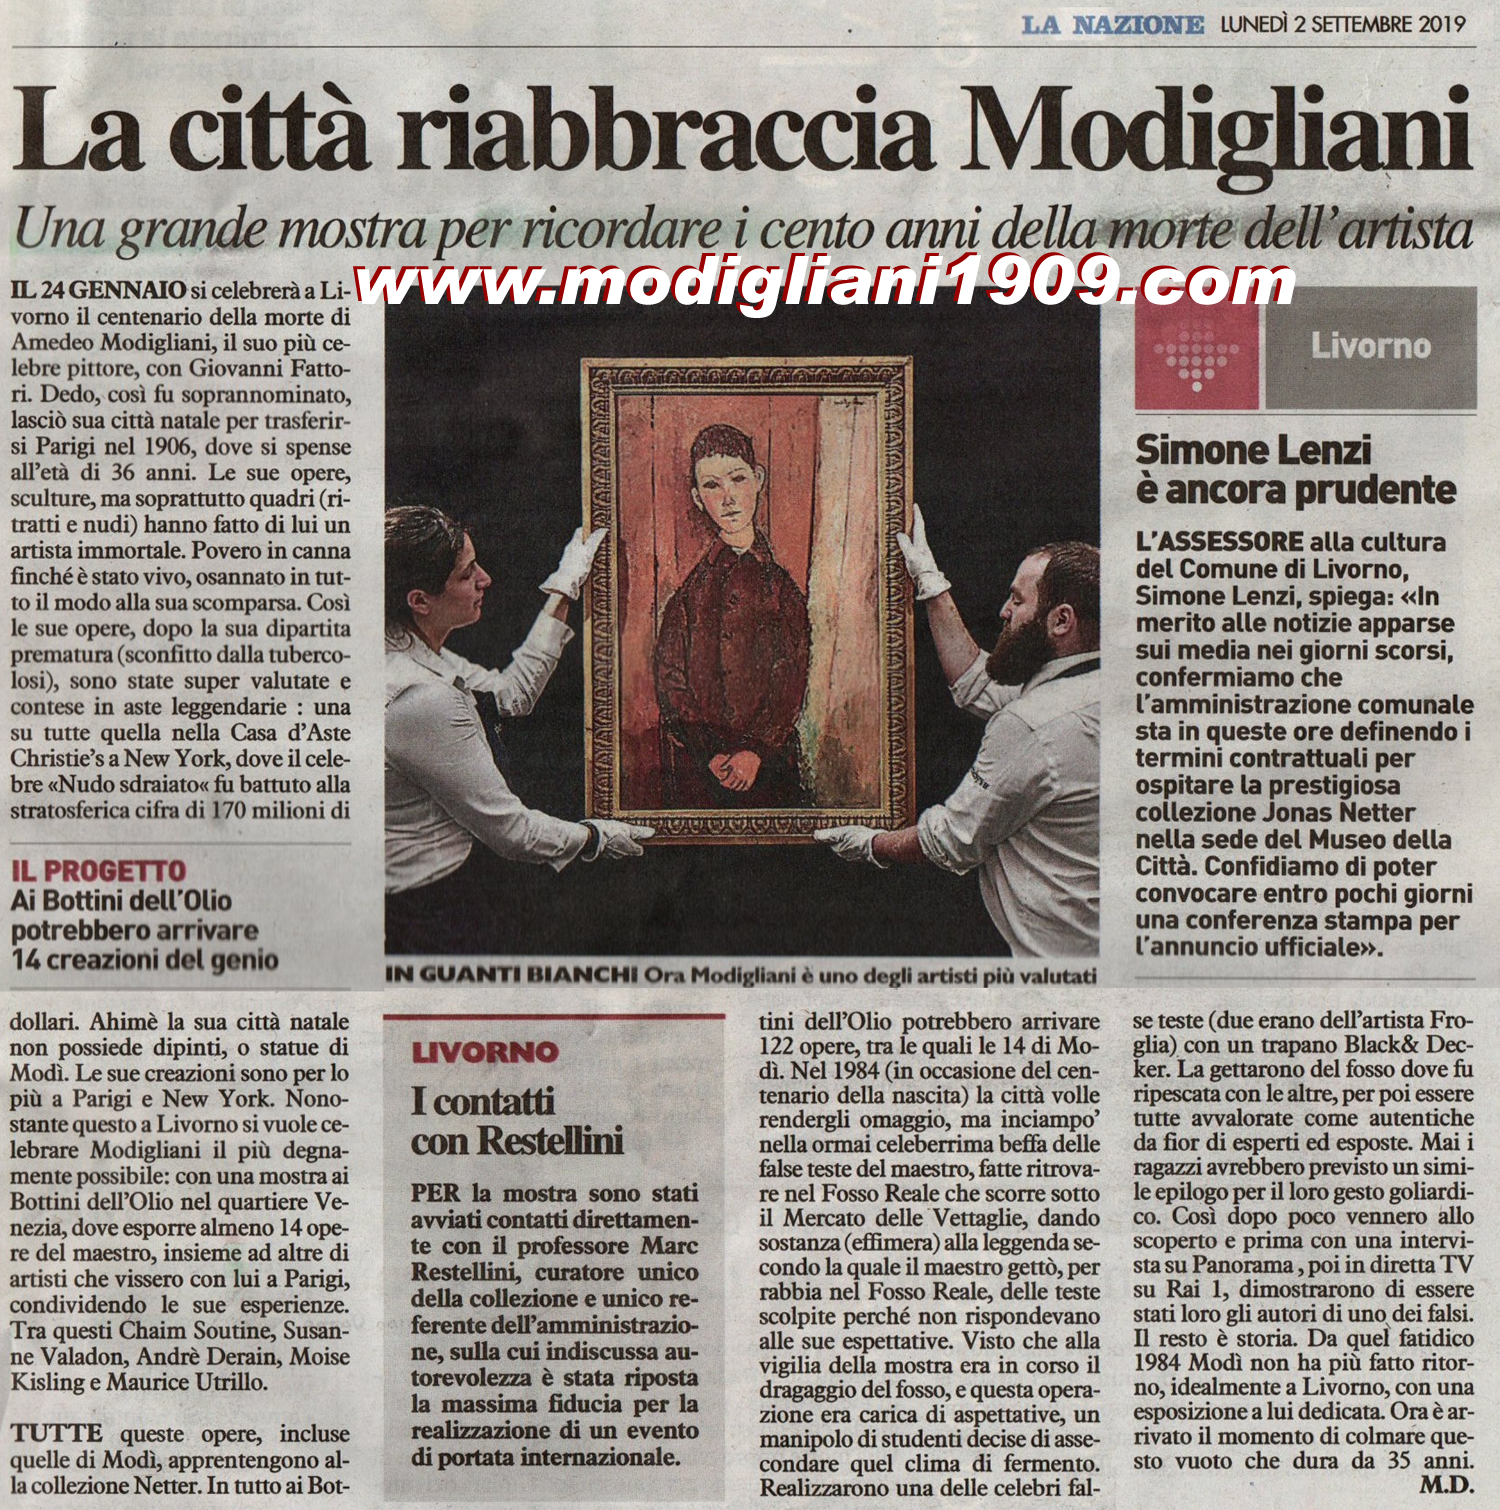 Modigliani a Livorno: una grande mostra per ricordare i 100 anni dell'artista